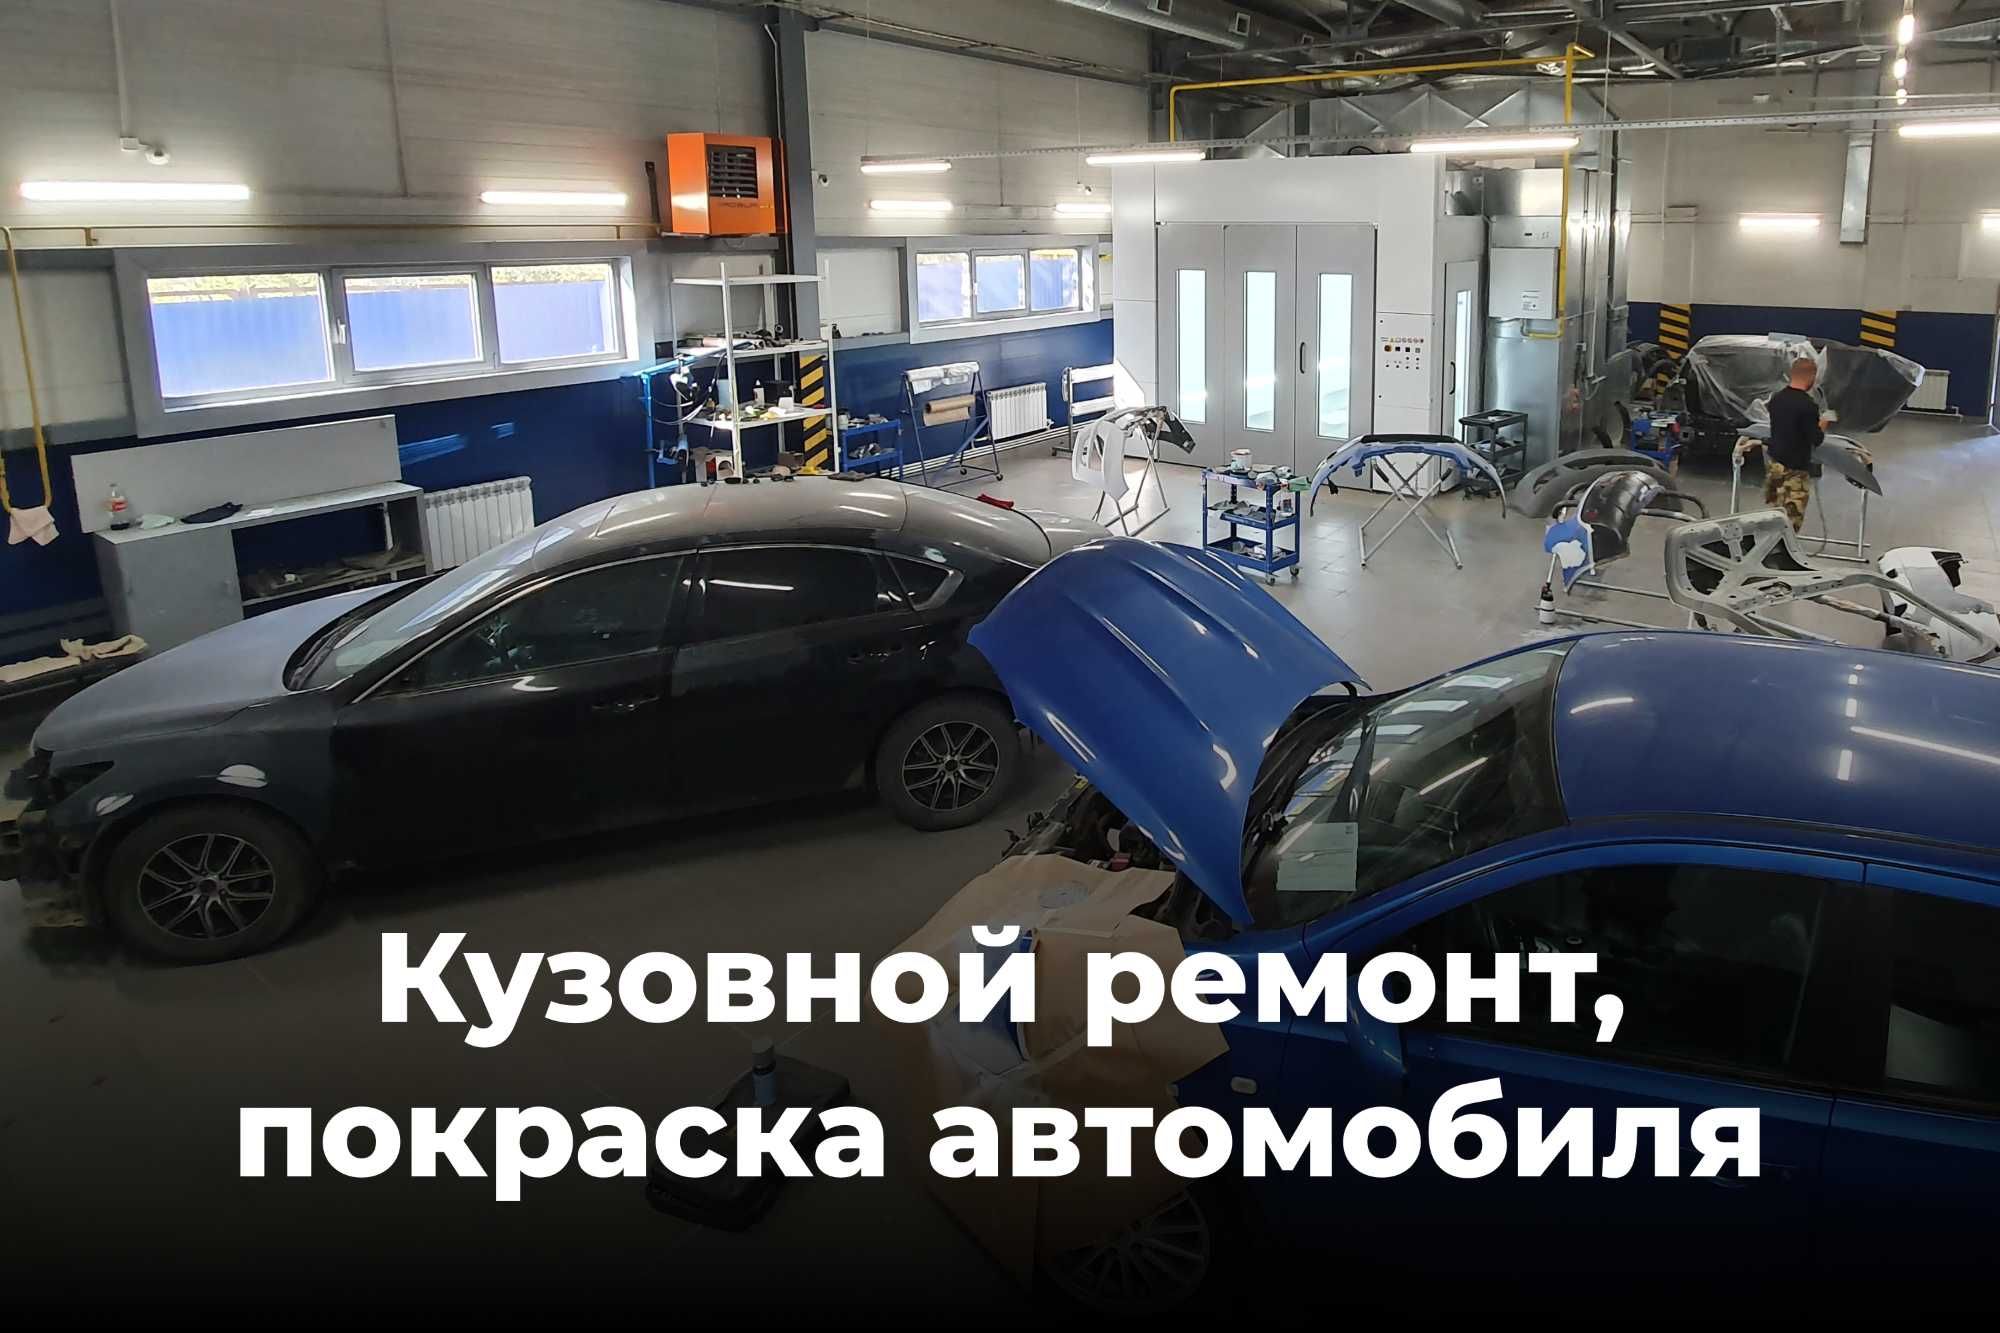 Кузовной ремонт, покраска автомобилей, Уральск